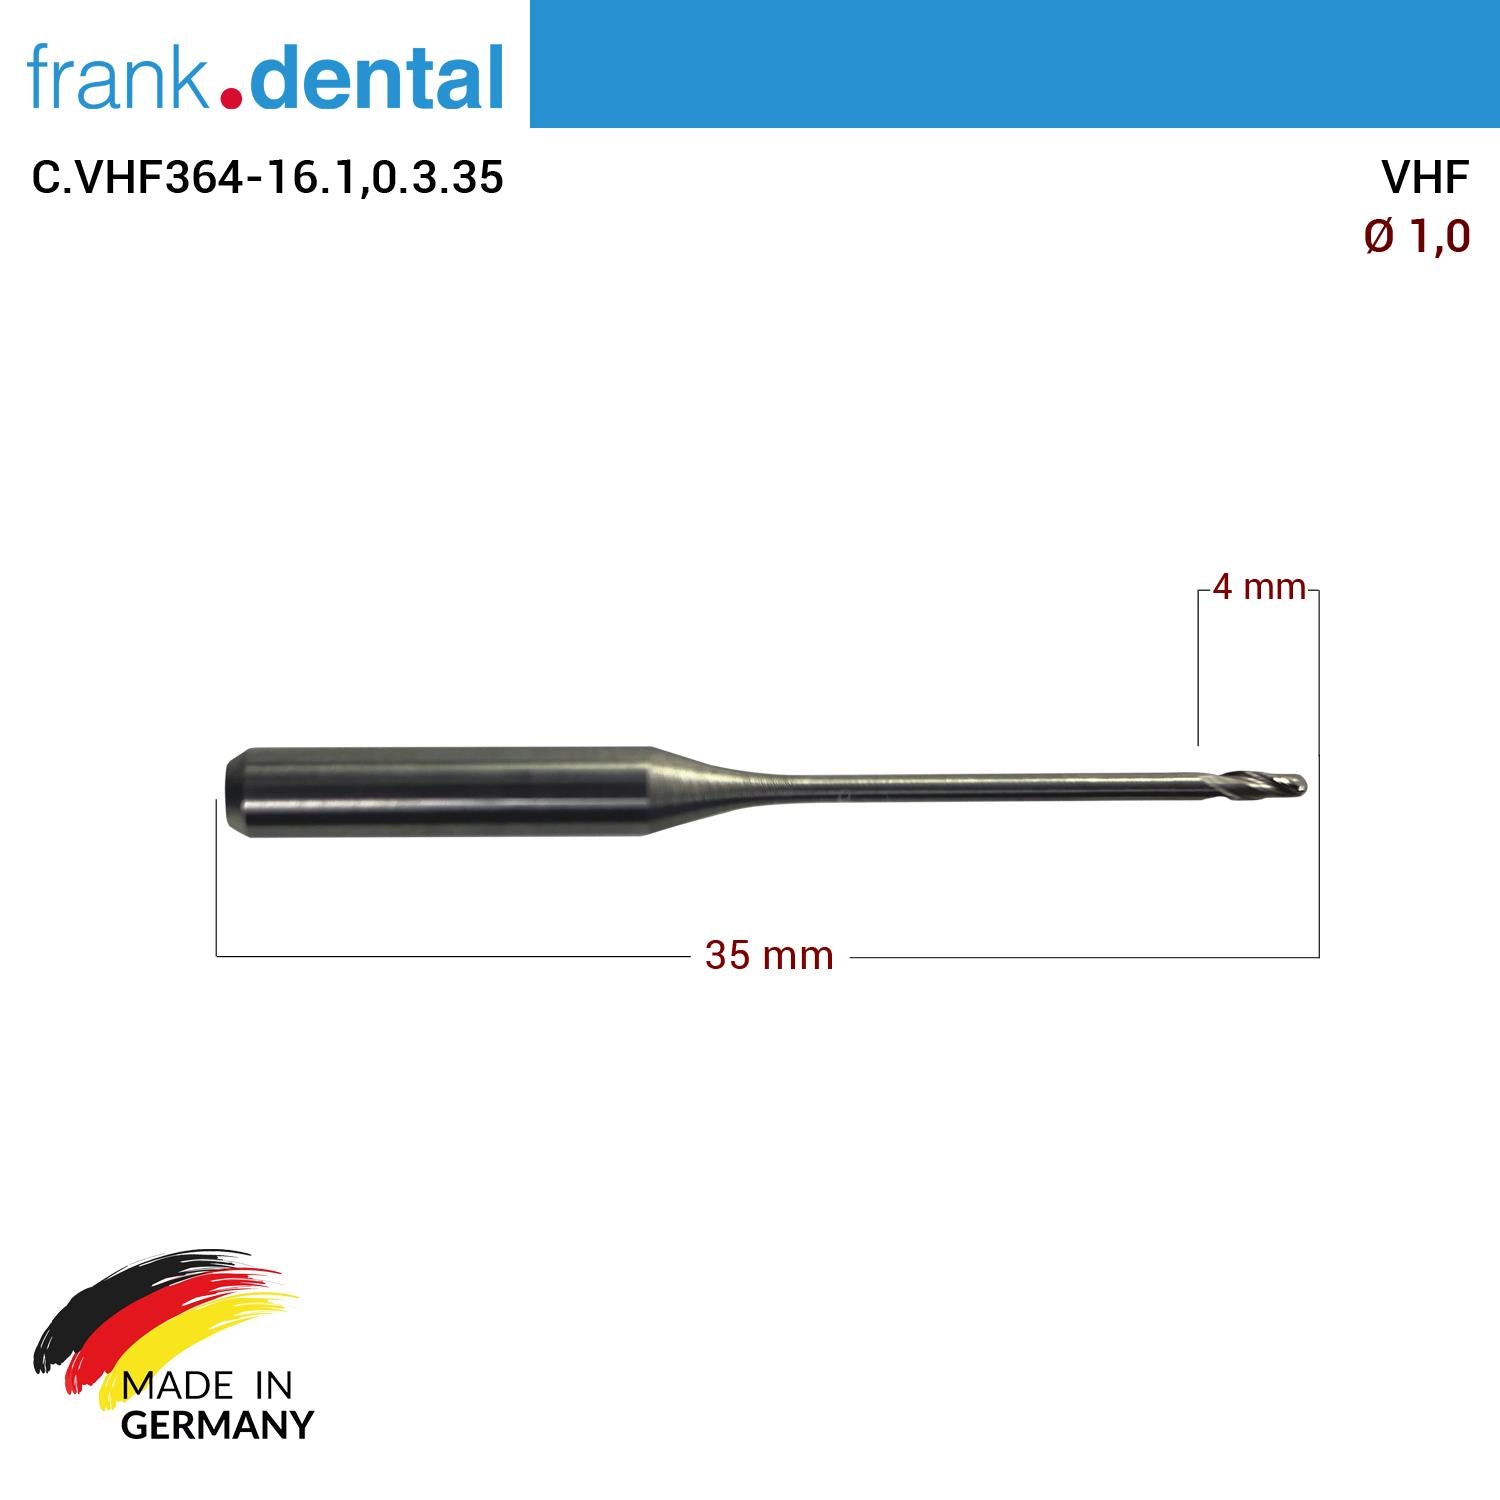 DentrealStore - Frank Dental VHF Cad Cam Drill 1.0mm